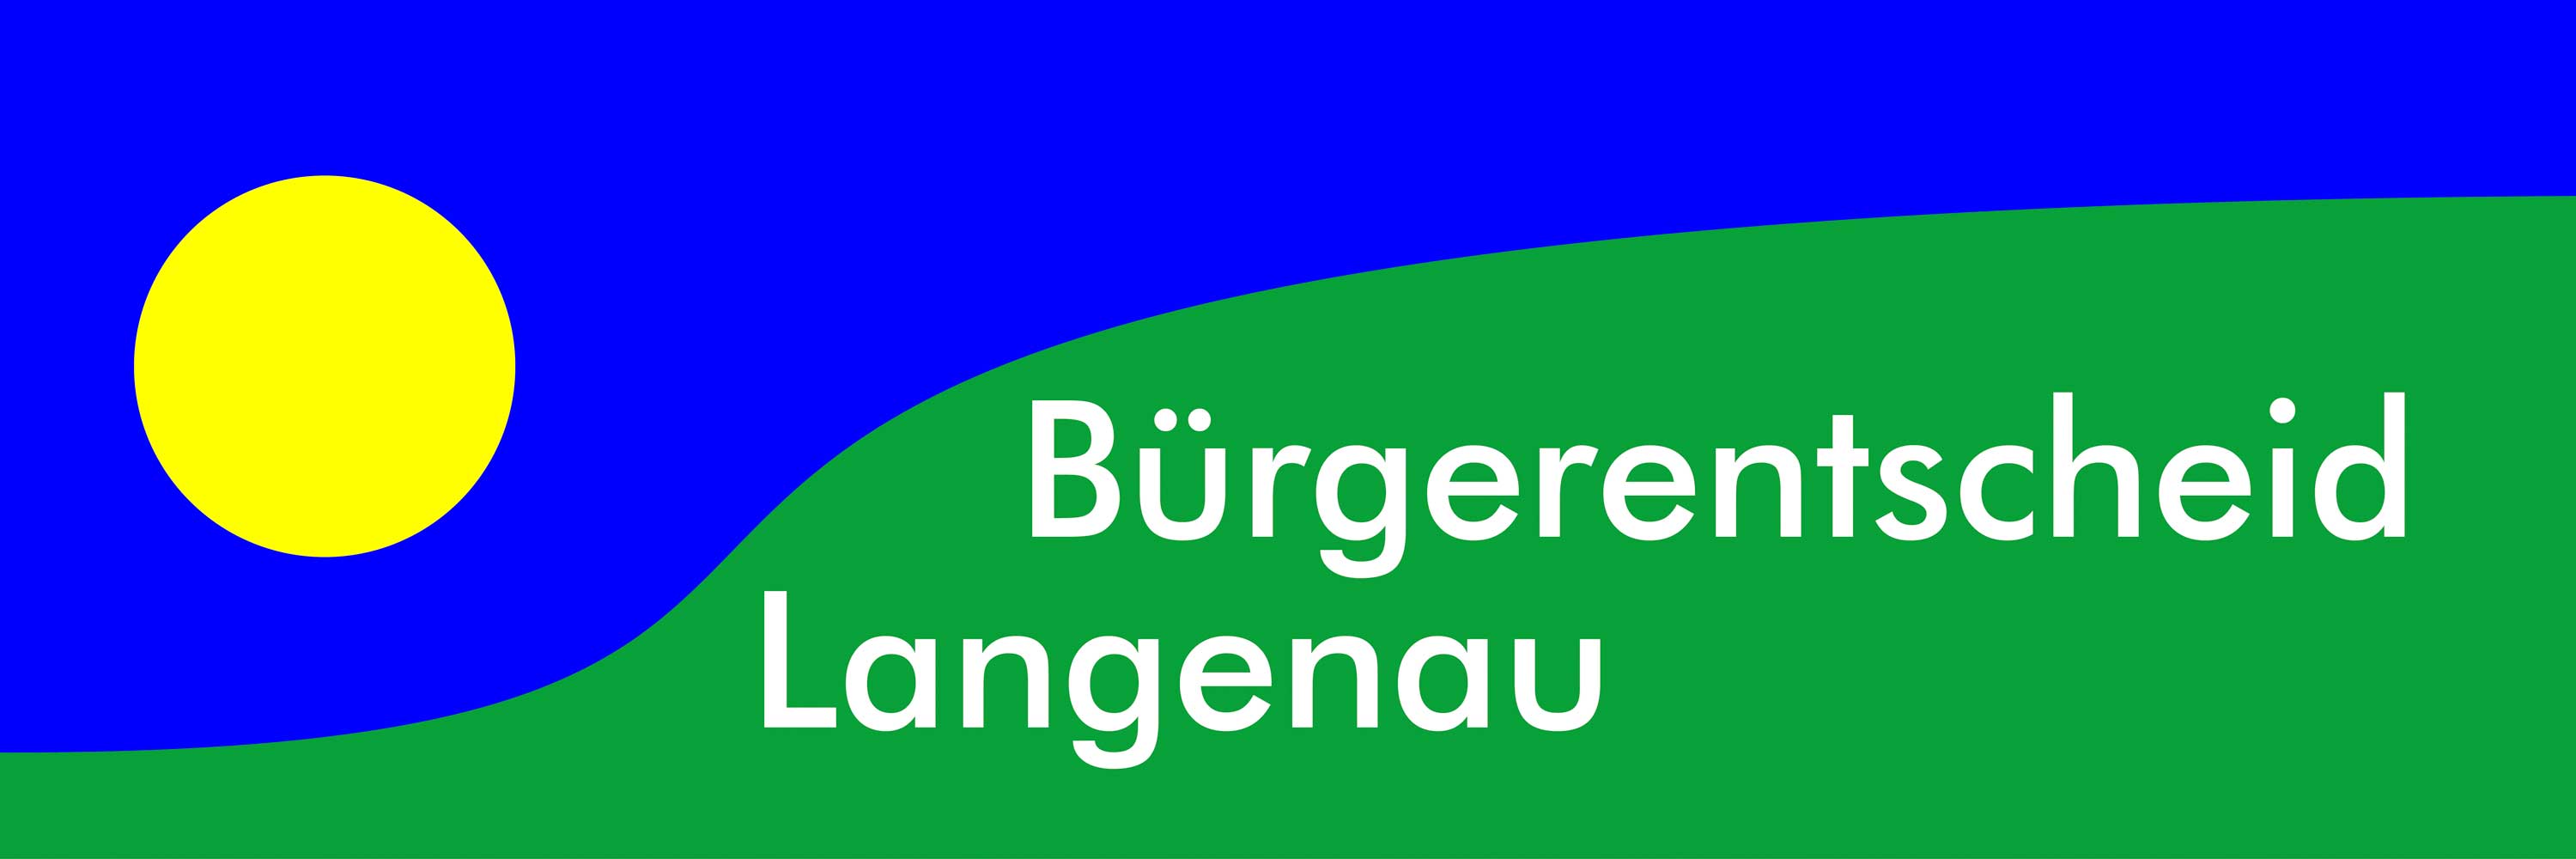 Bürgerentscheid-Langenau